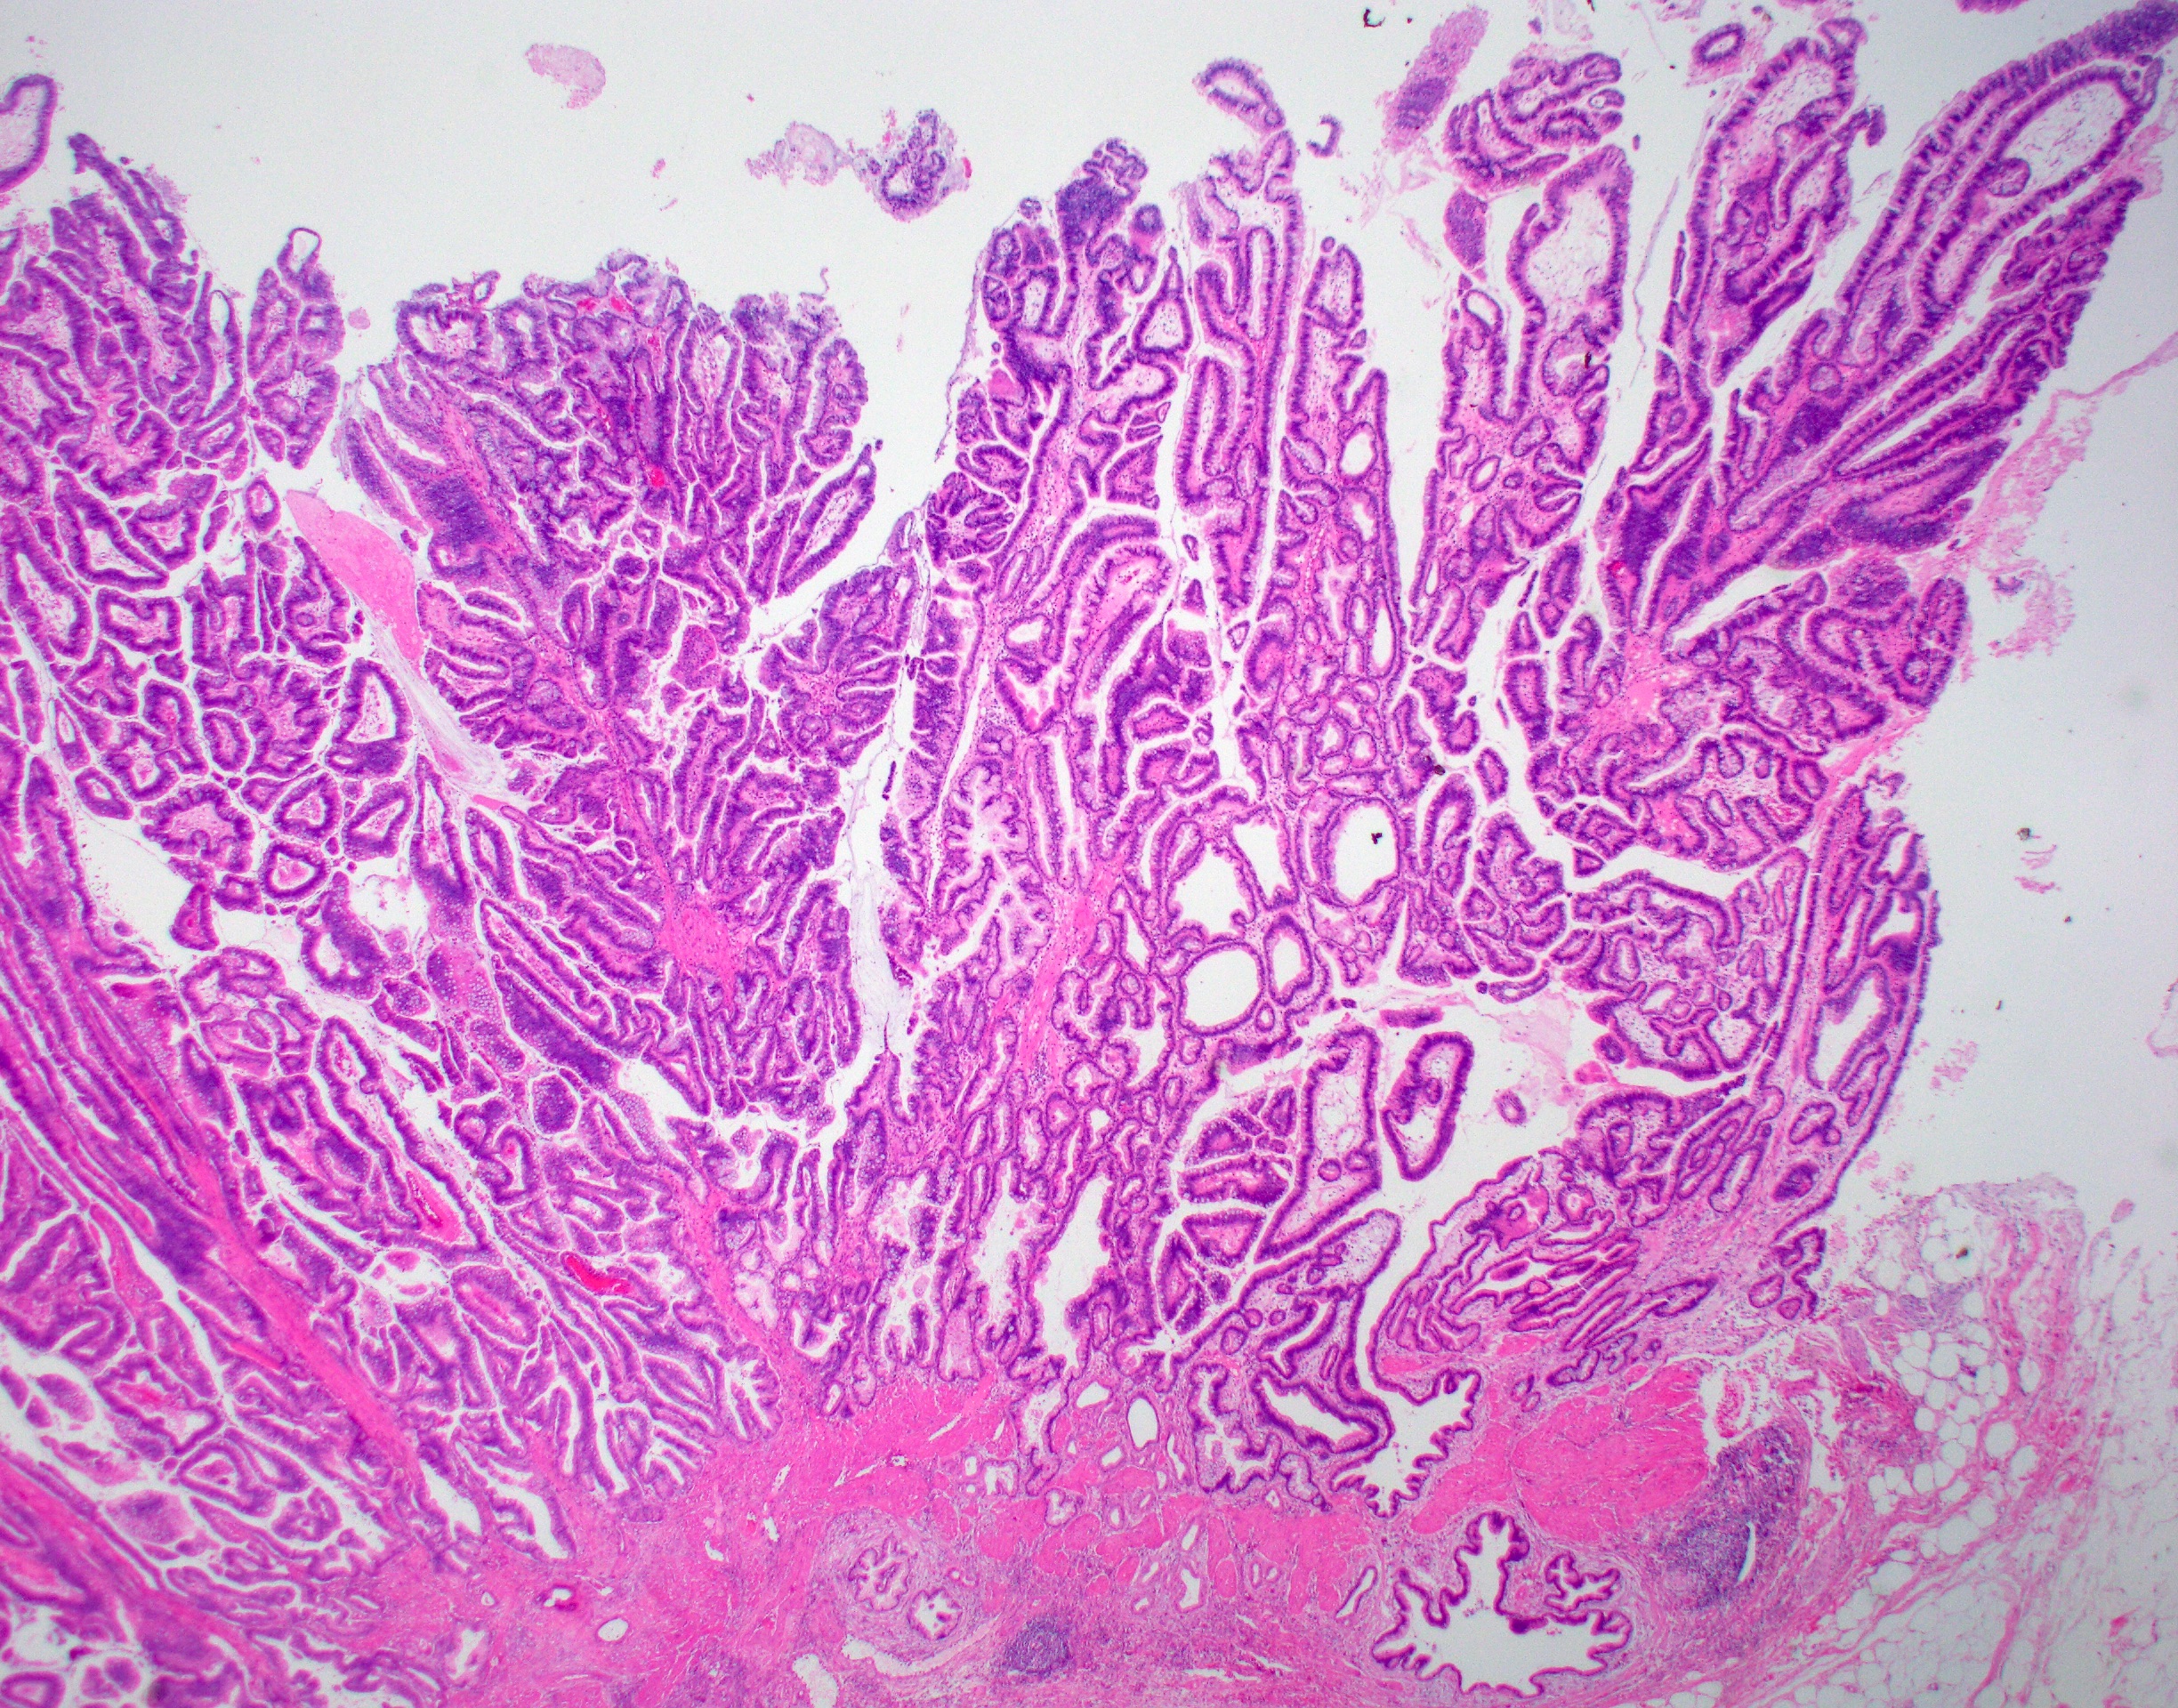 Pathology Outlines - Gallbladder carcinoma